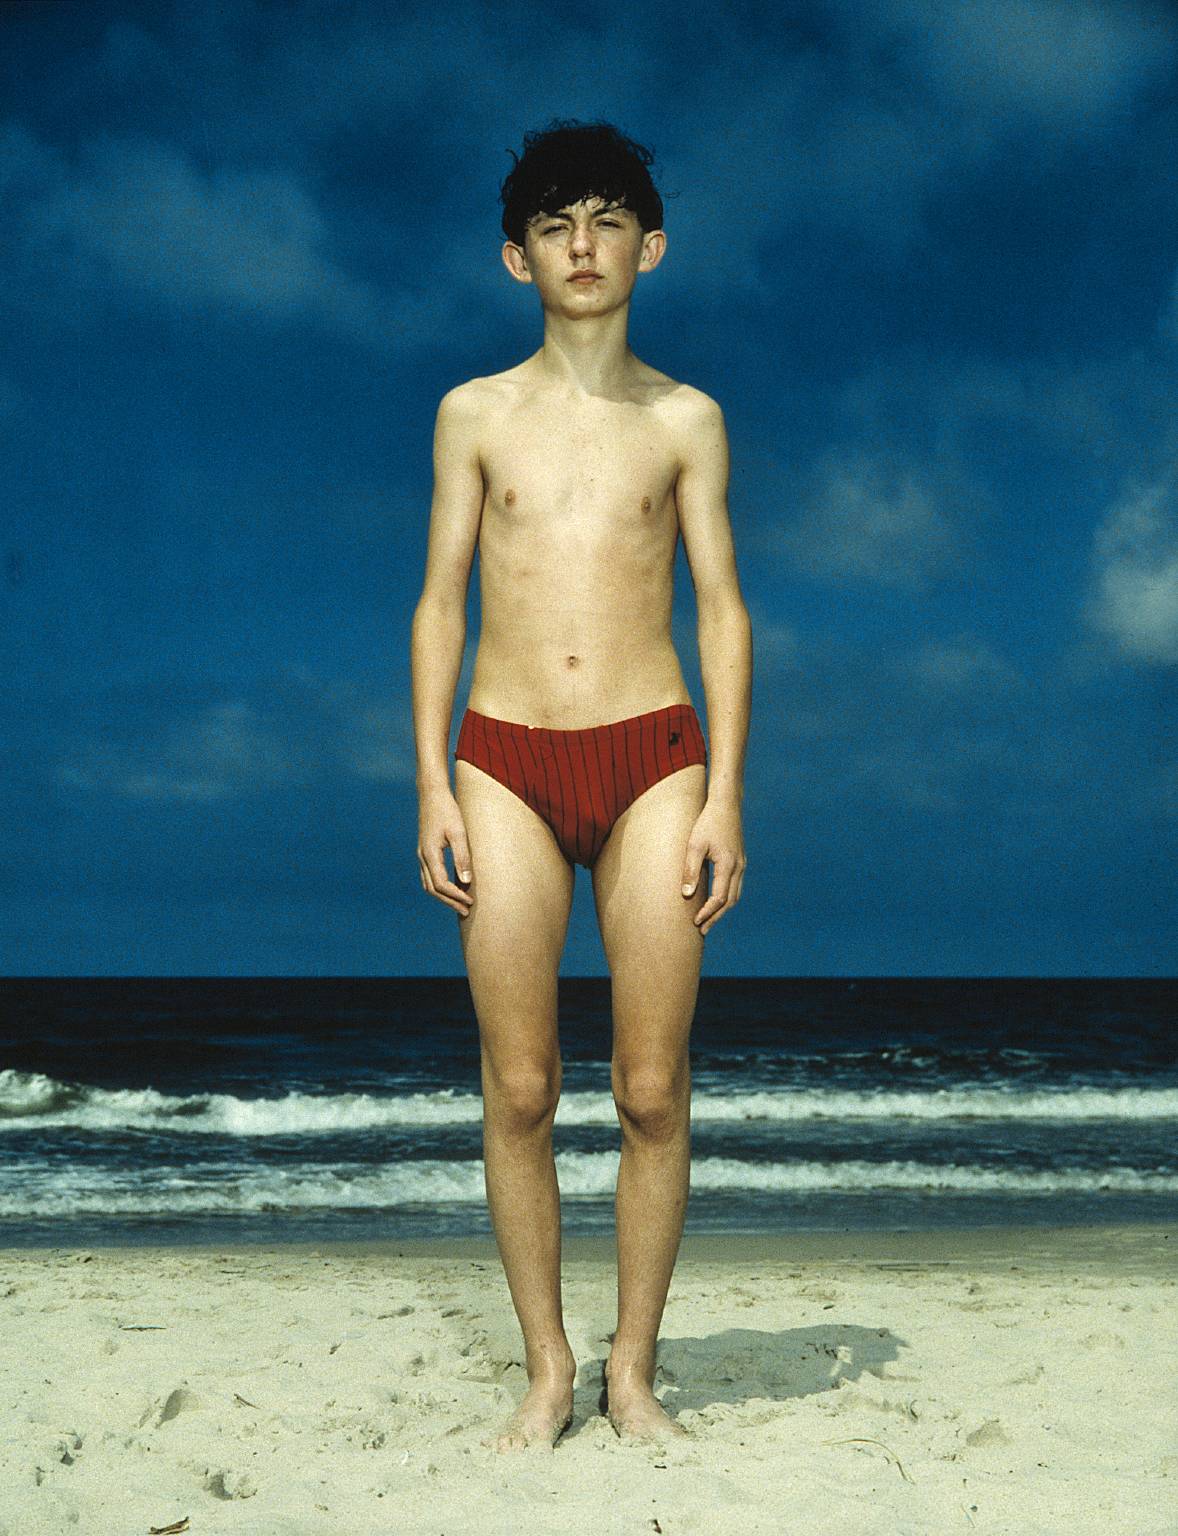 Ринеке Дейкстра (Rineke Dijkstra). Современное искусство Нидерландов. Beach Portraits - пляжные портреты